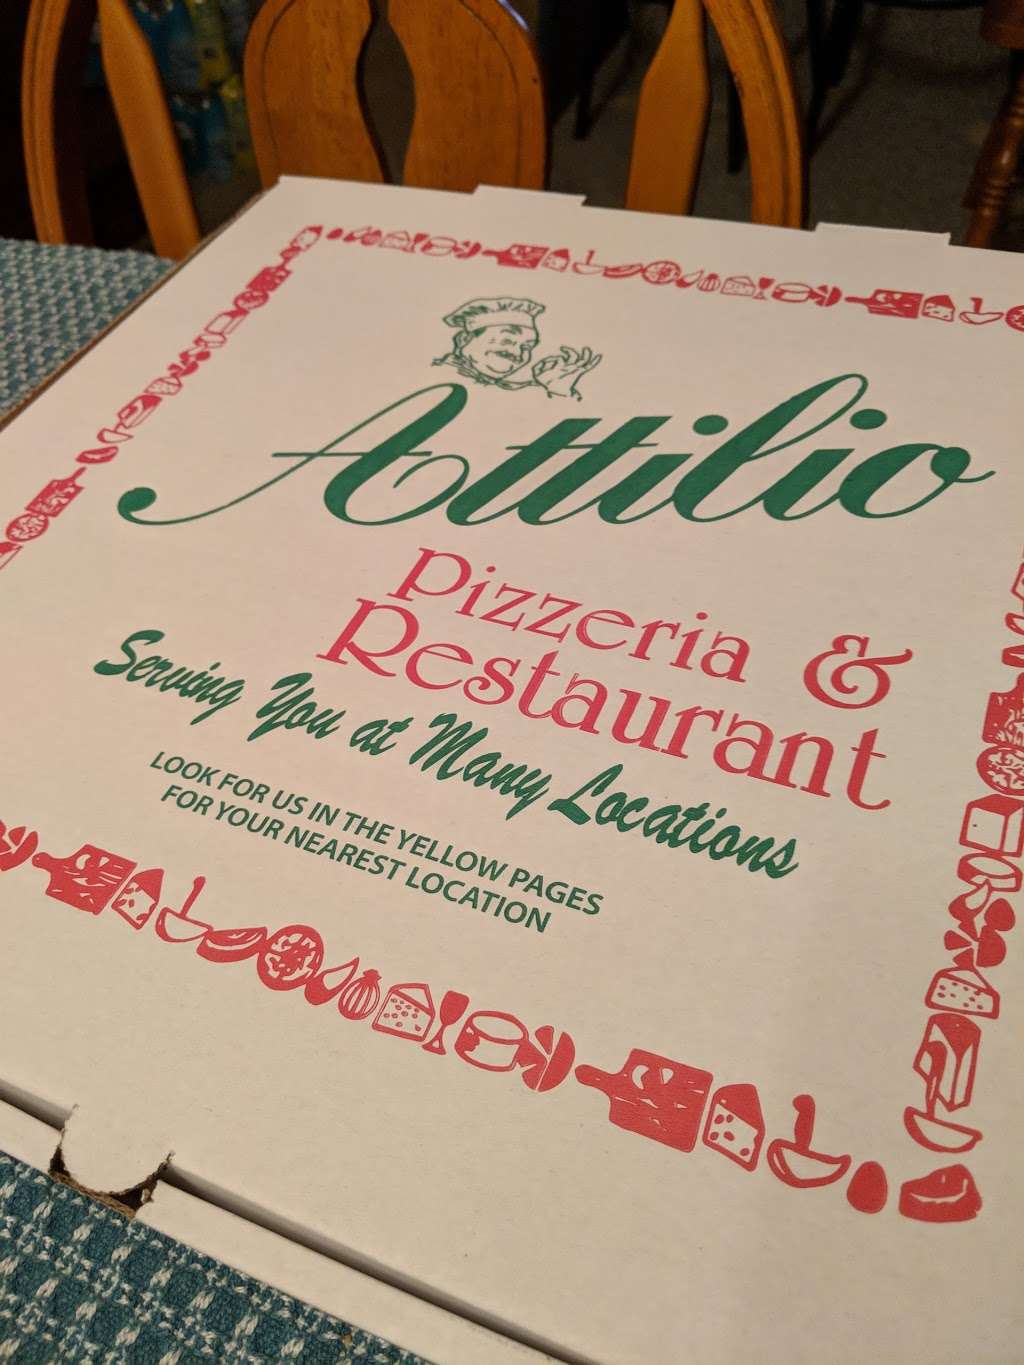 Attilios Pizza | 3735 1447, NJ-18, Old Bridge, NJ 08857 | Phone: (732) 307-2700